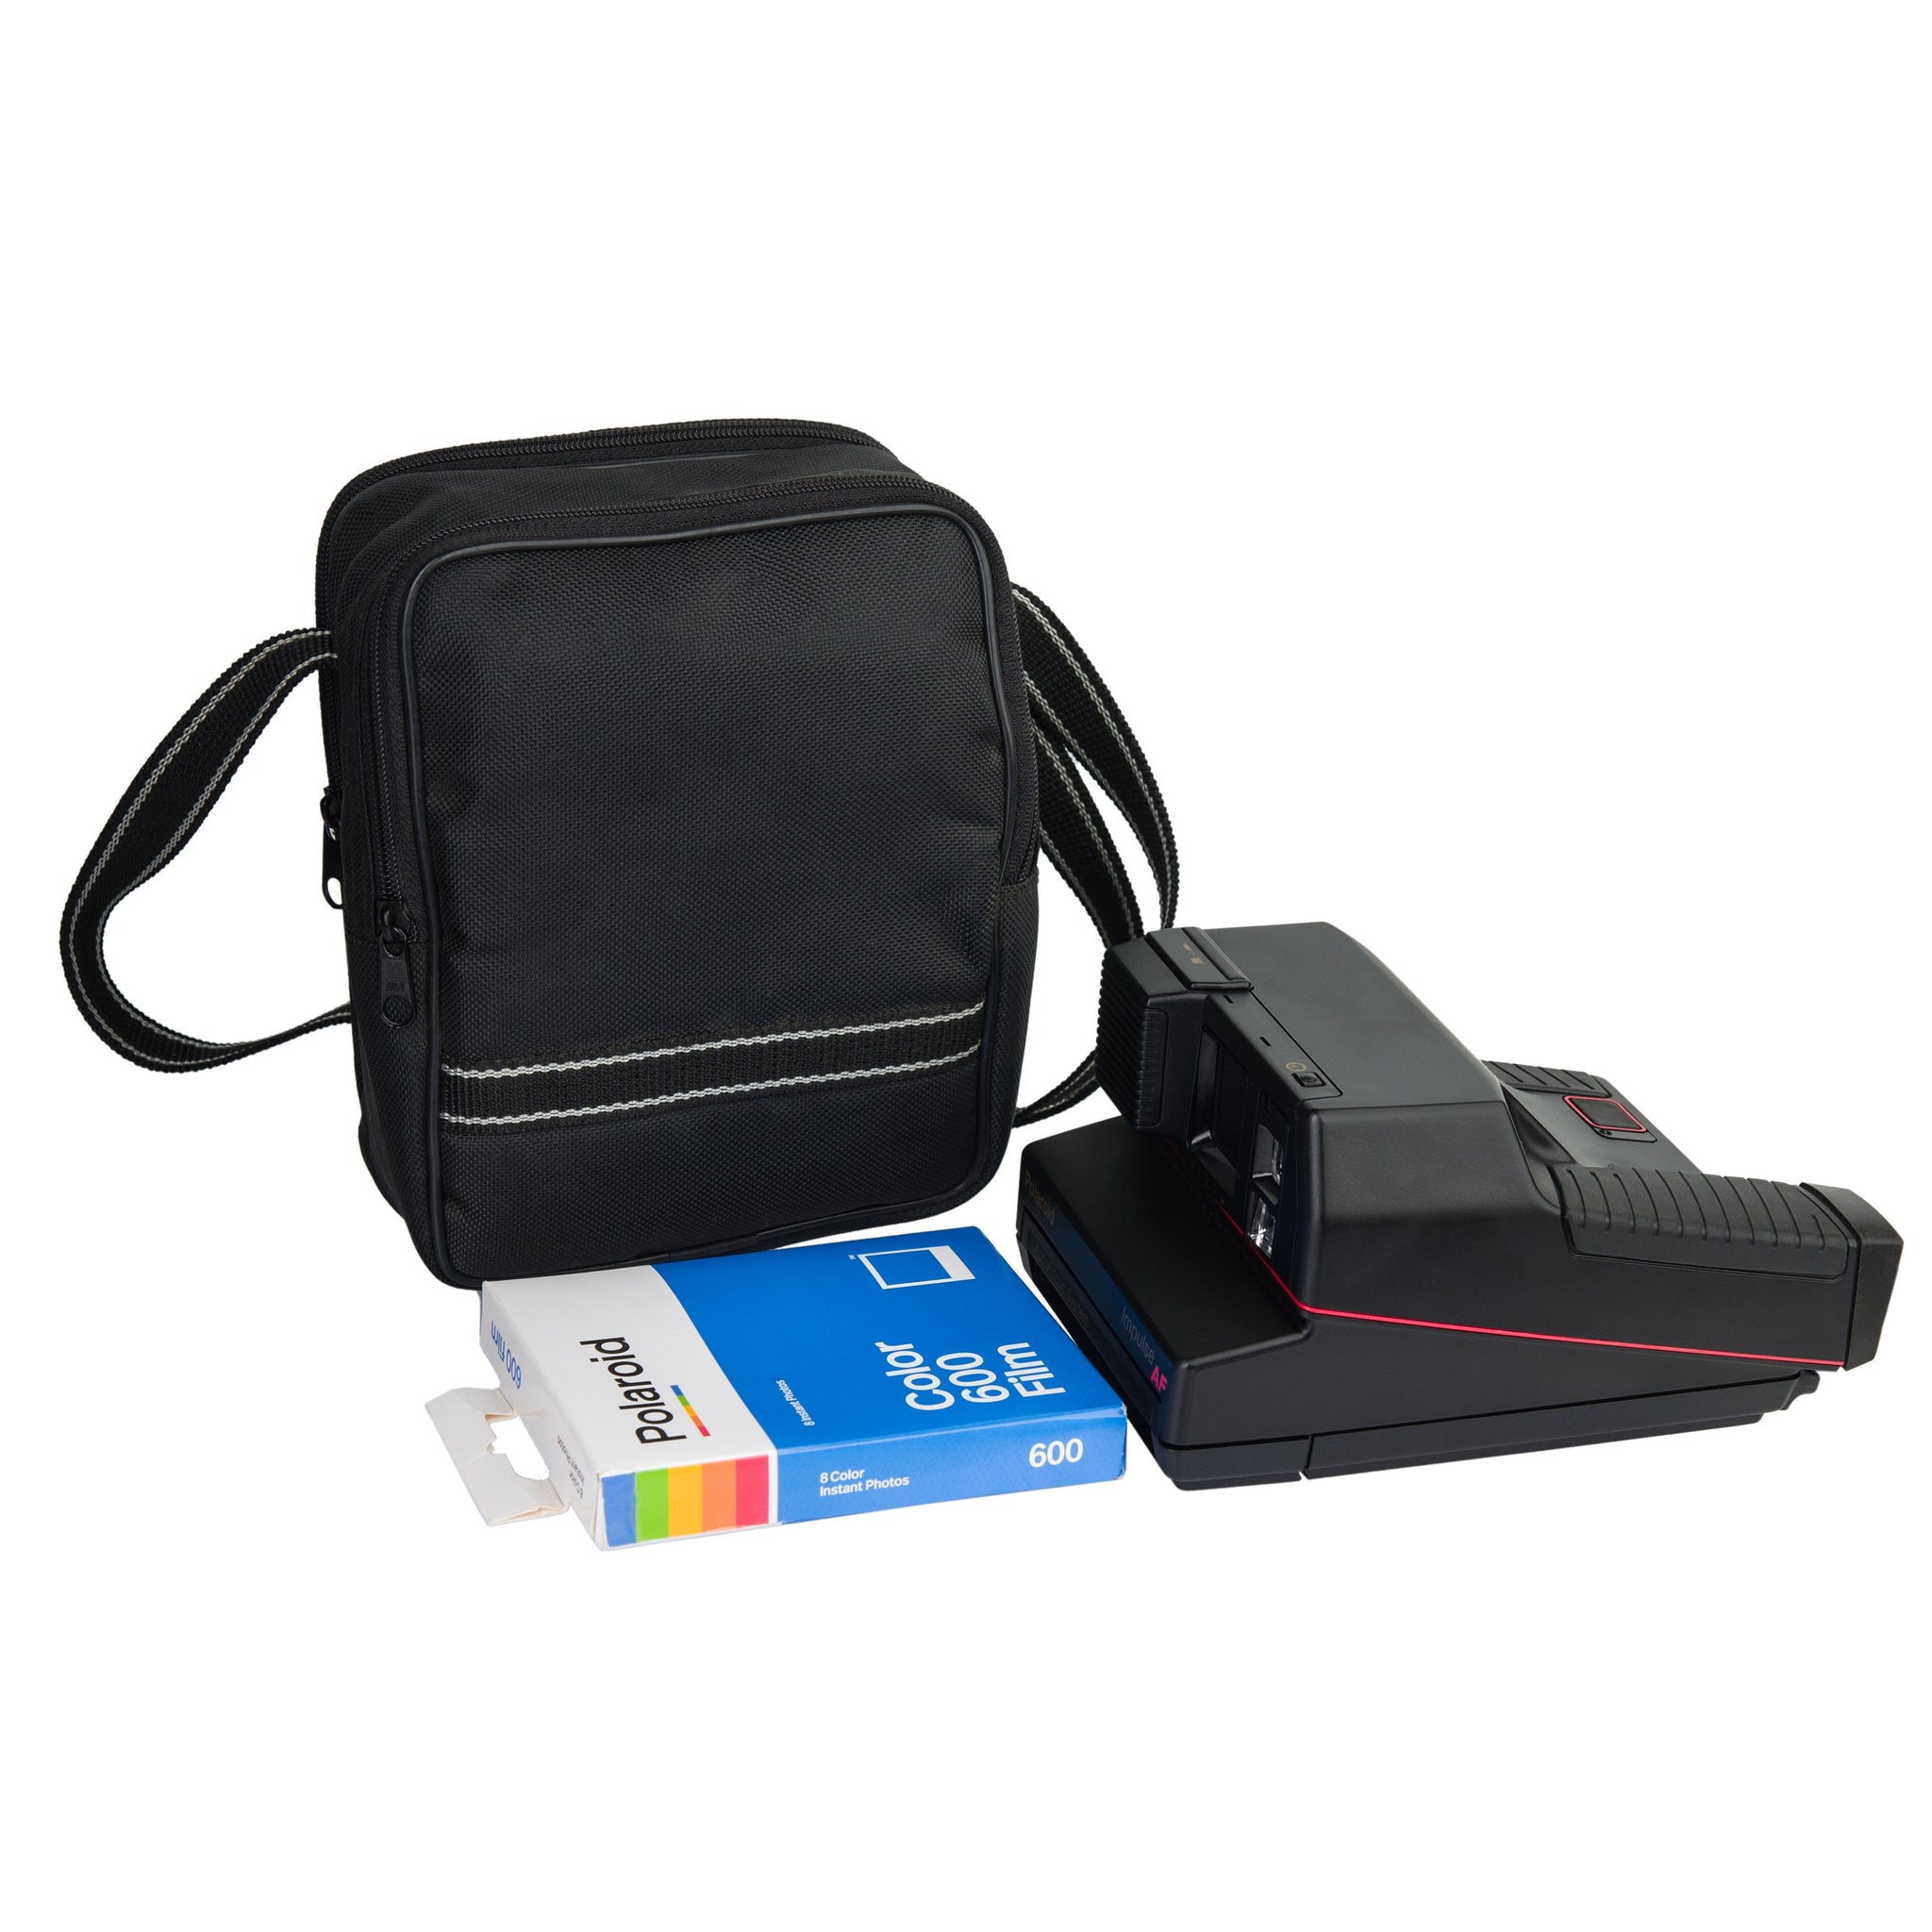 Black Polaroid Camera Bag,Polaroid 600, Original POLAROID Bag, Birthday Gift, Photographer Gift, Vintage Bag, Fabric Bag - Vintage Polaroid Instant Cameras